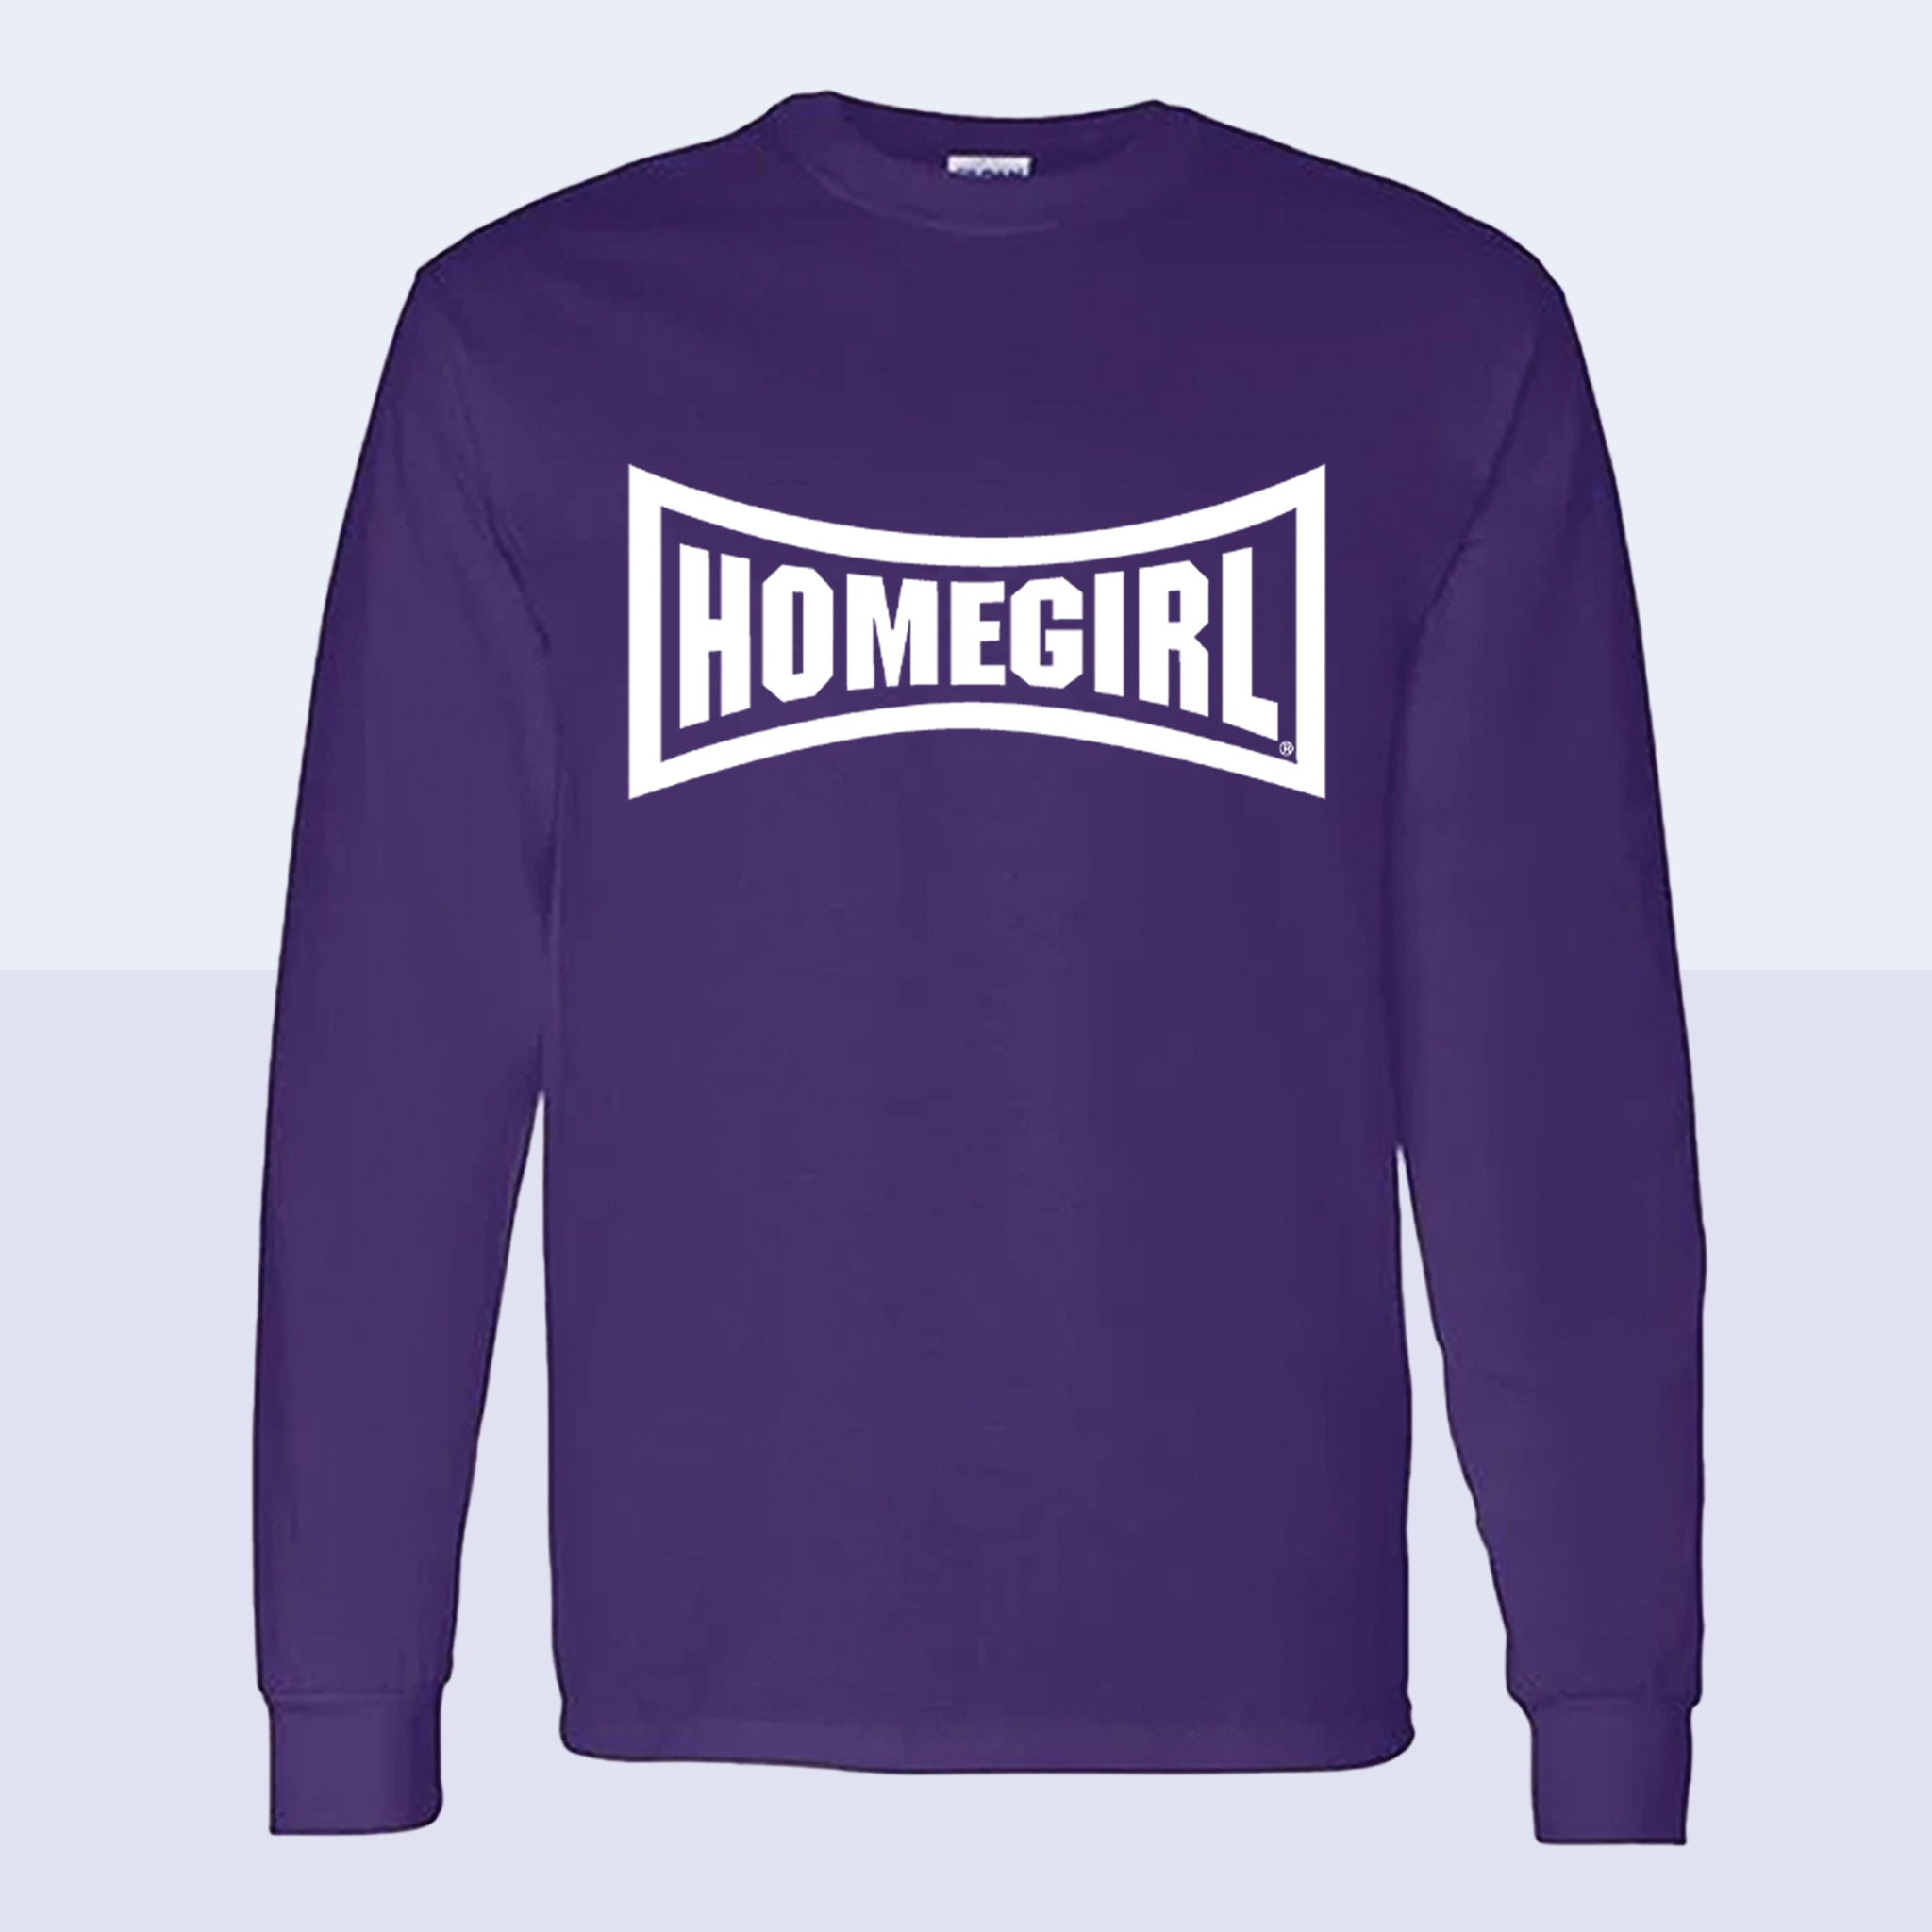 Homegirl Long Sleeve T-Shirt